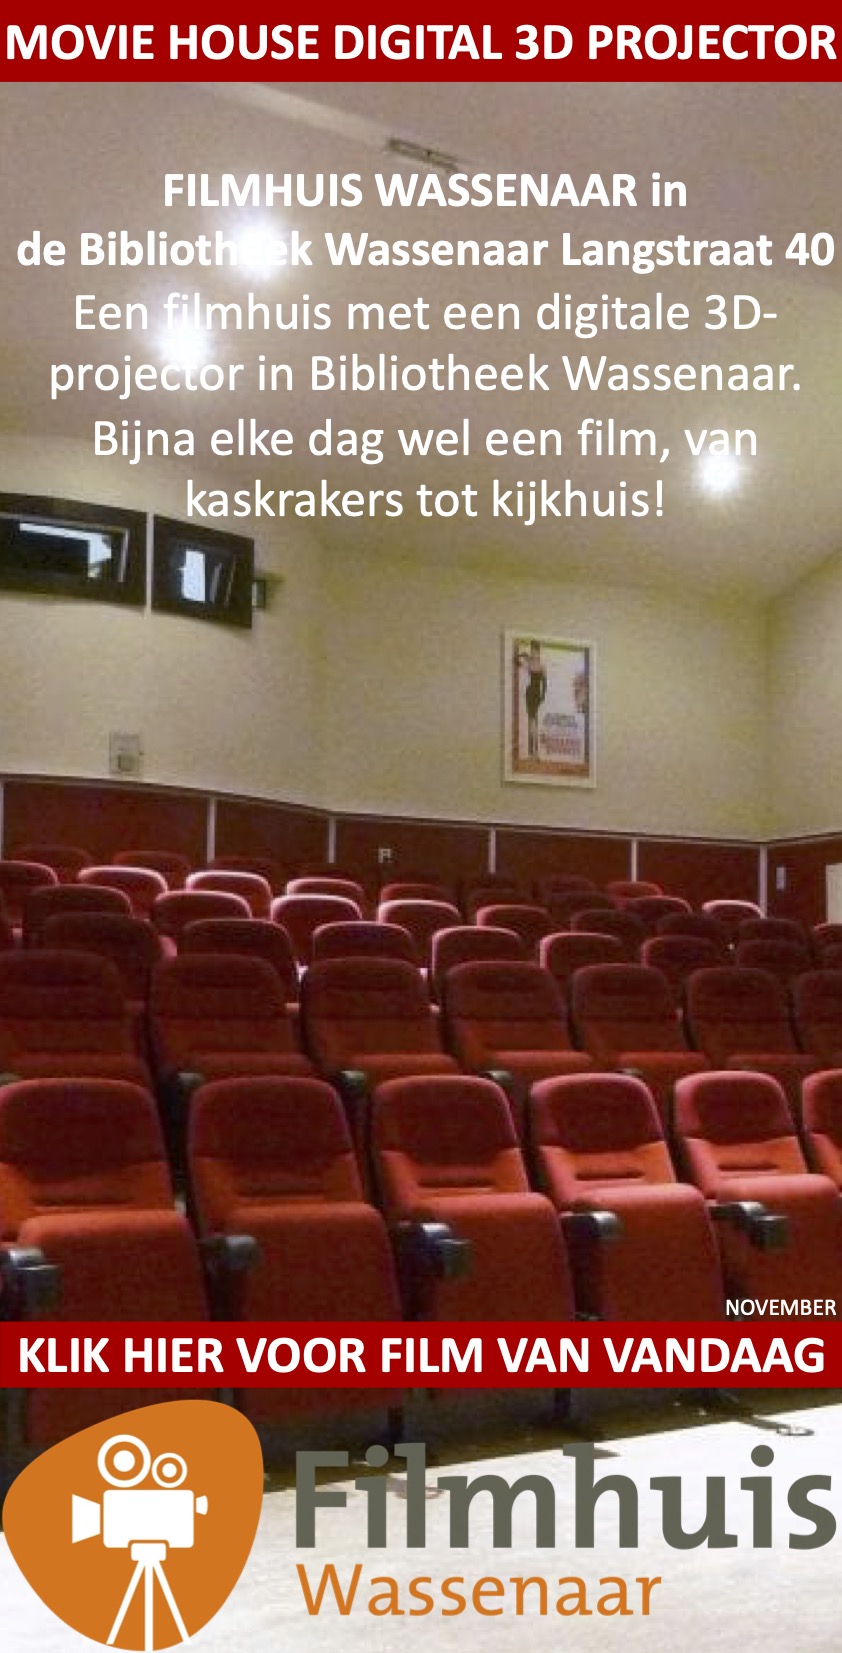 Filmhuis Wassenaar in de Bibliotheek Langstraat 40 november